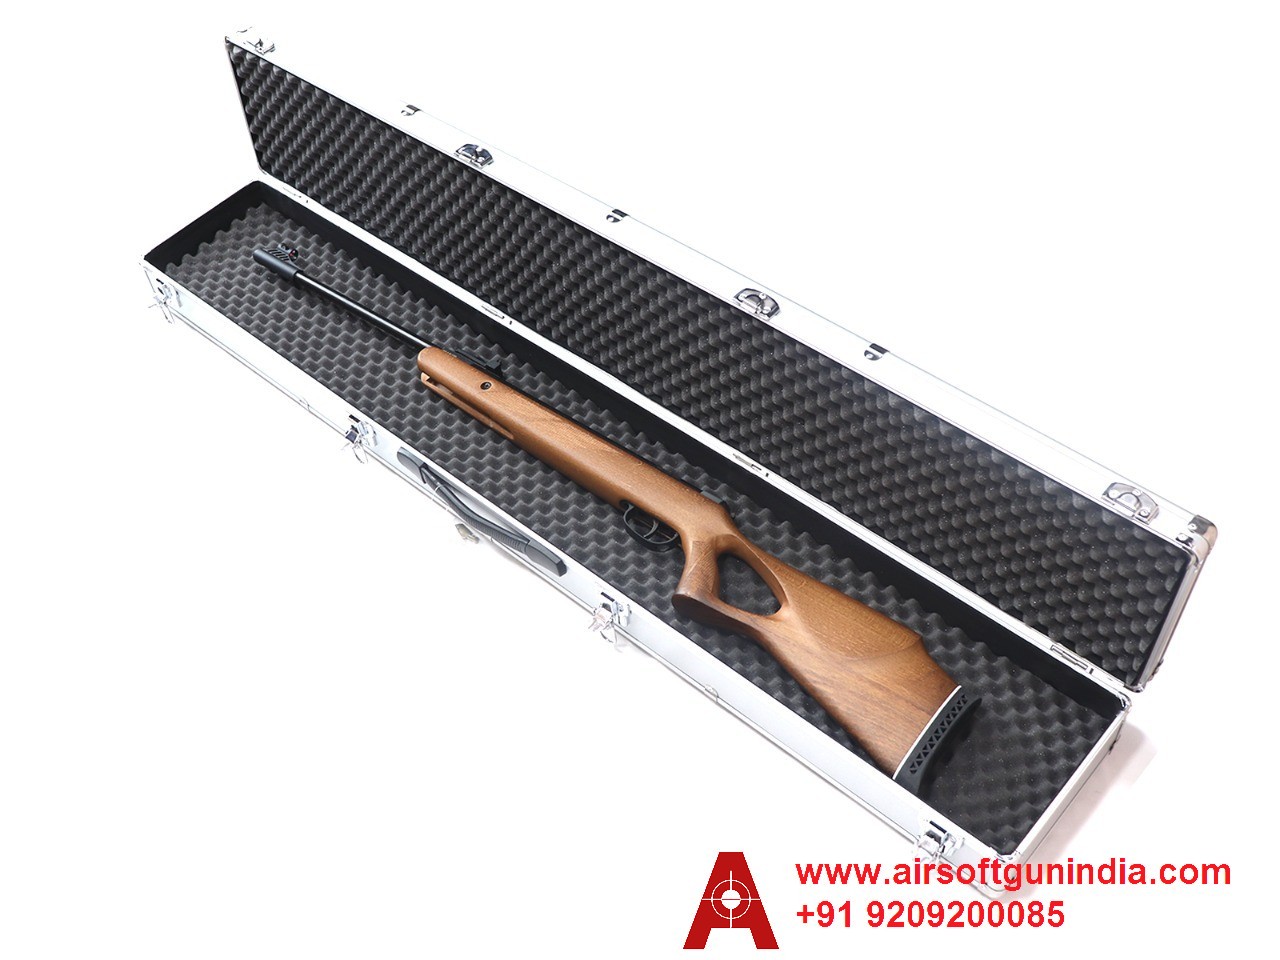 Rifle Case Foam Based For Diana Air Rifles By Airsoft Gun India